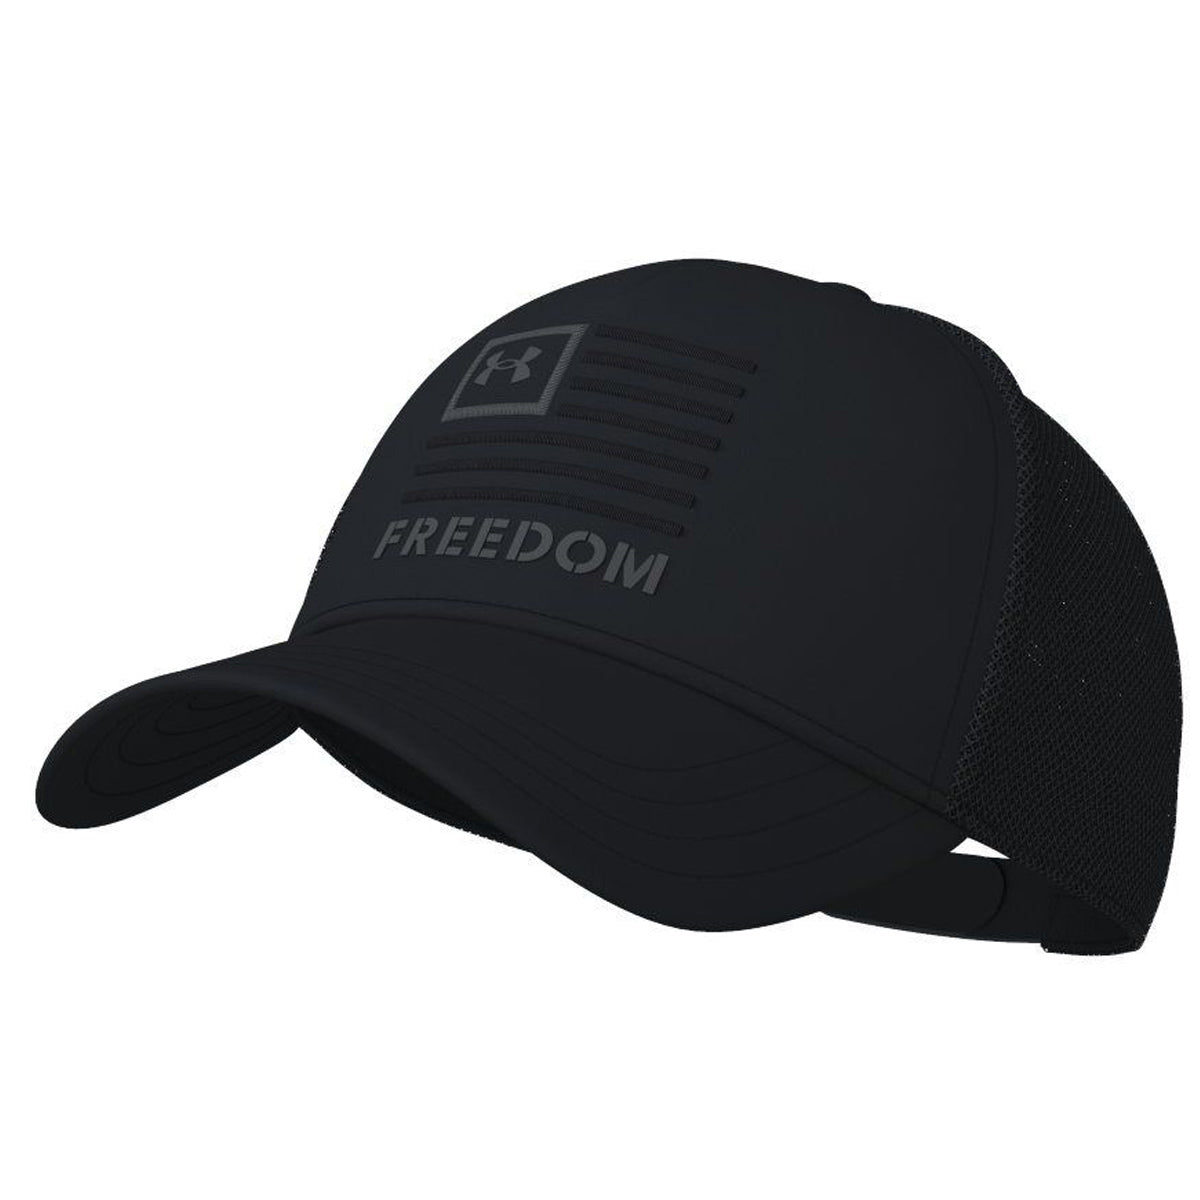 Under Armour Freedom Trucker Hat-Tac Essentials